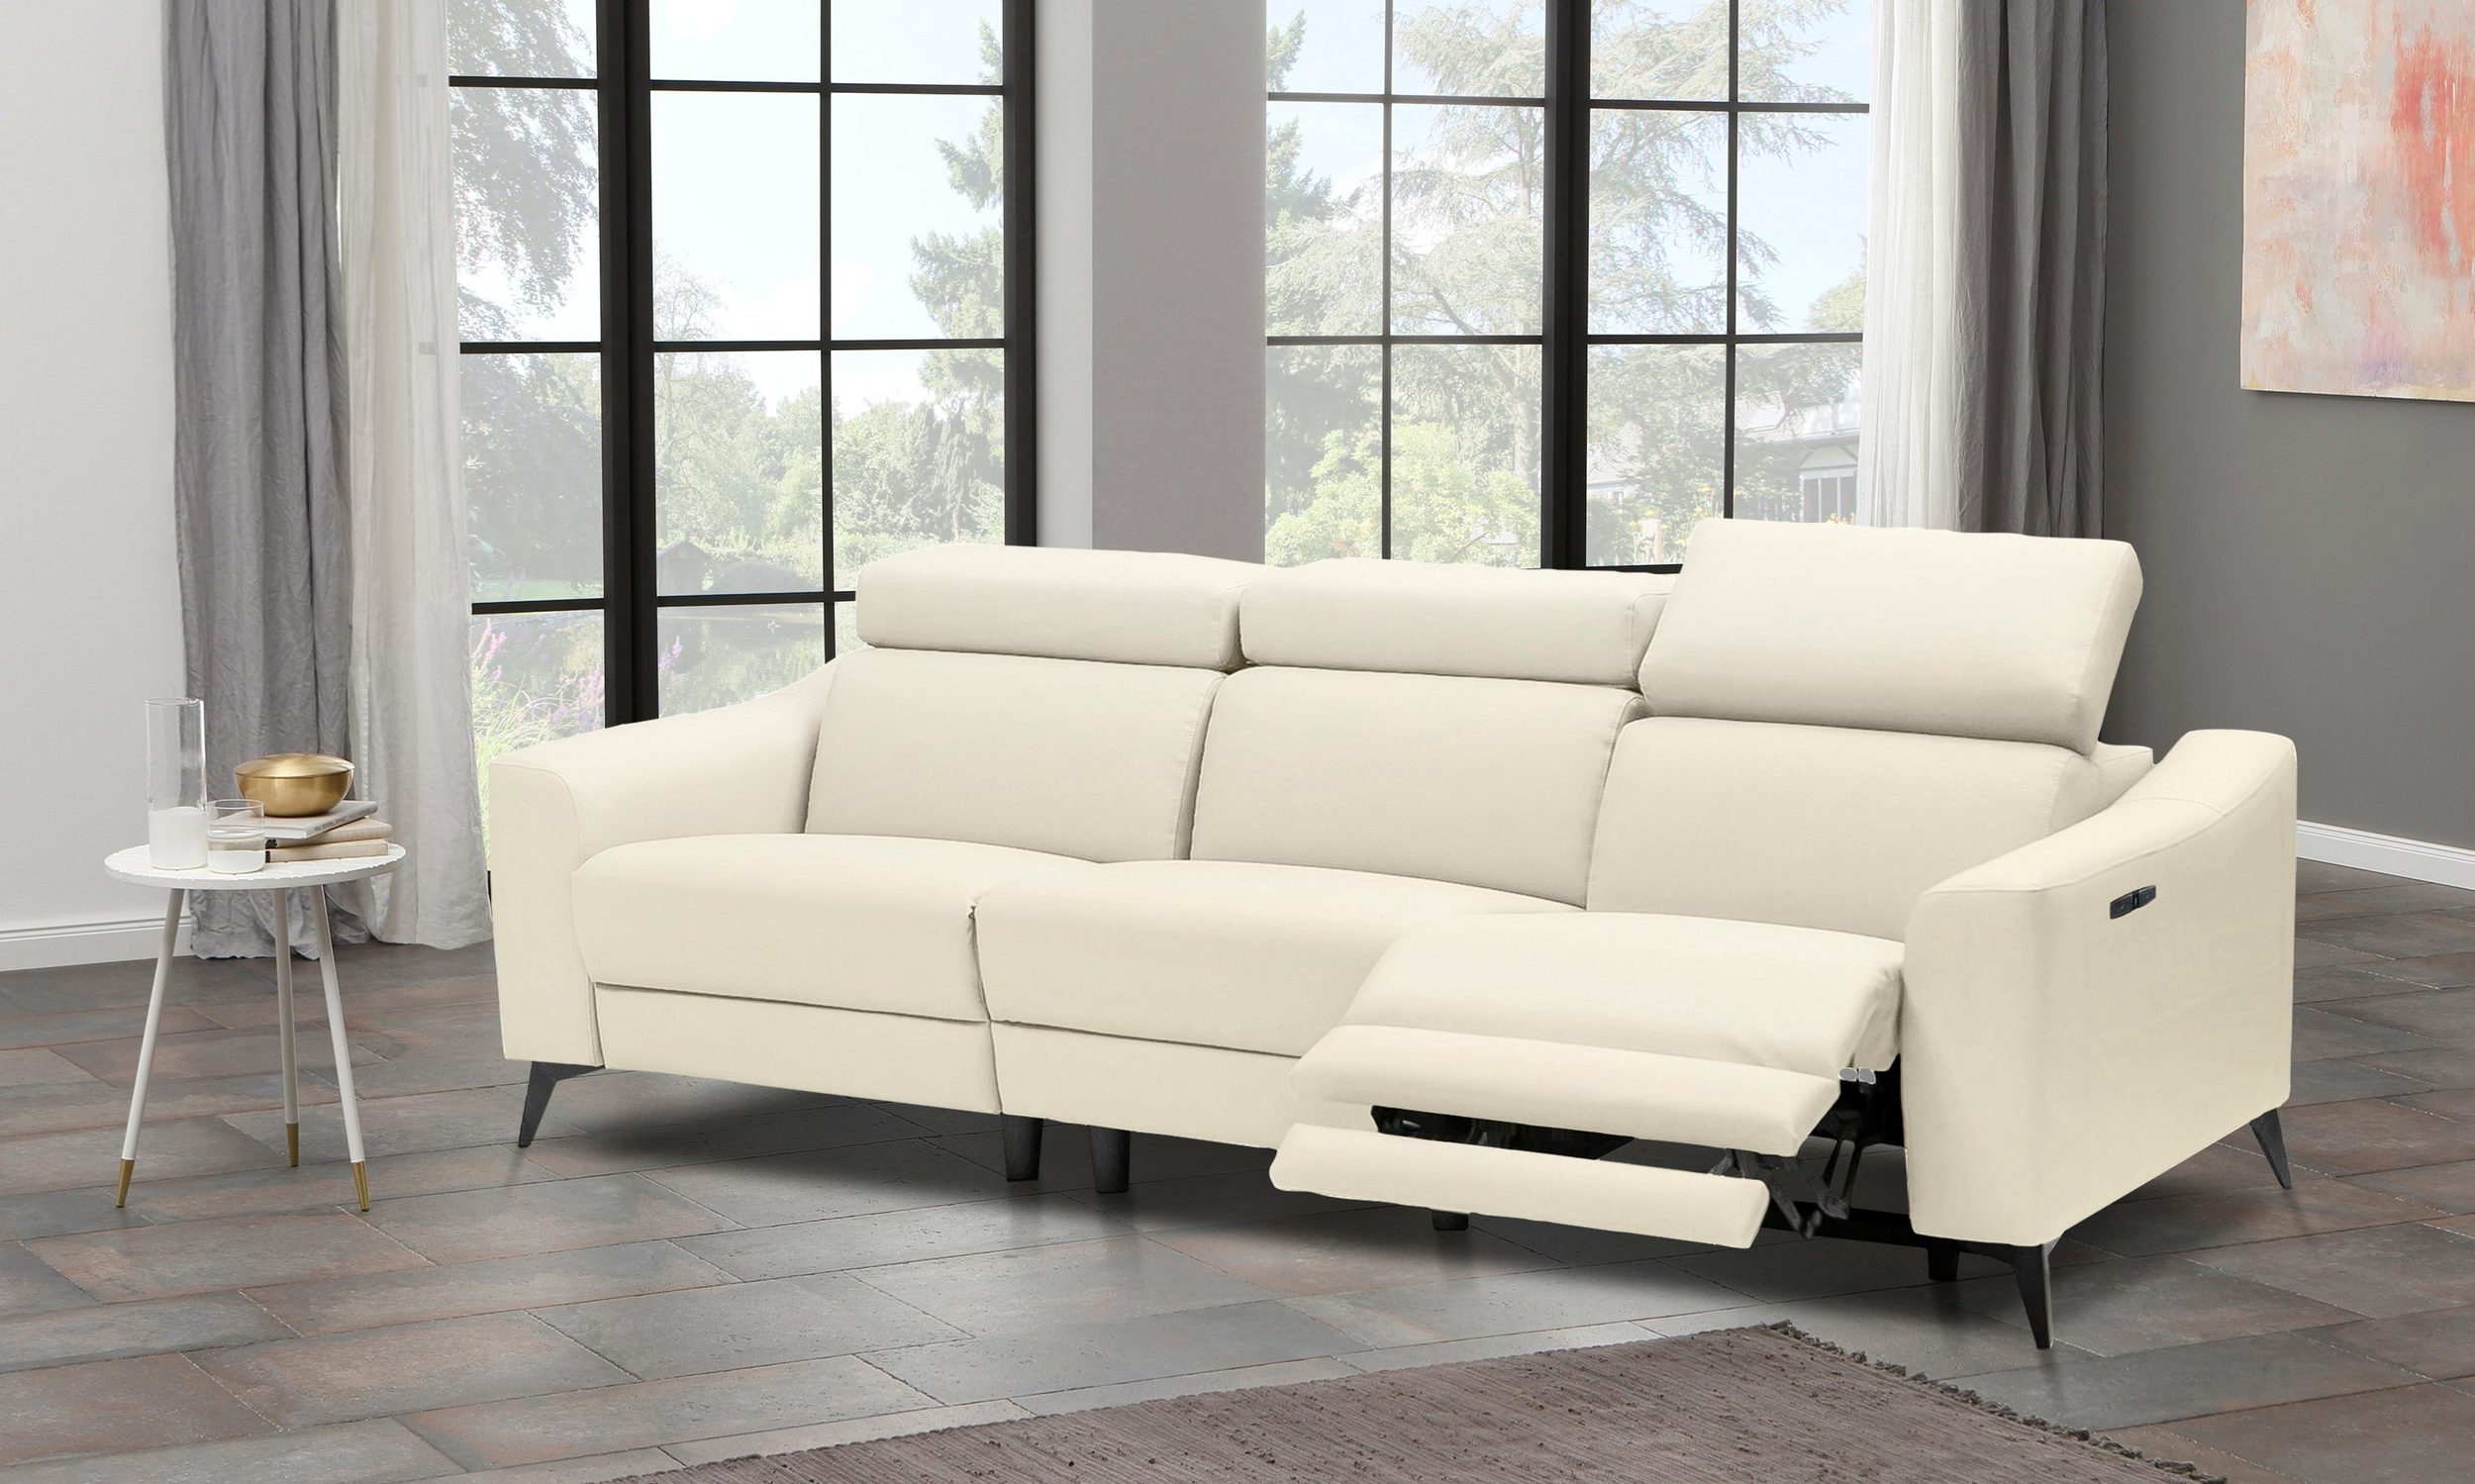 Sofa 3-Sitzer VALERIO von PLACES OF STYLE - Einrichtungsvorschlag